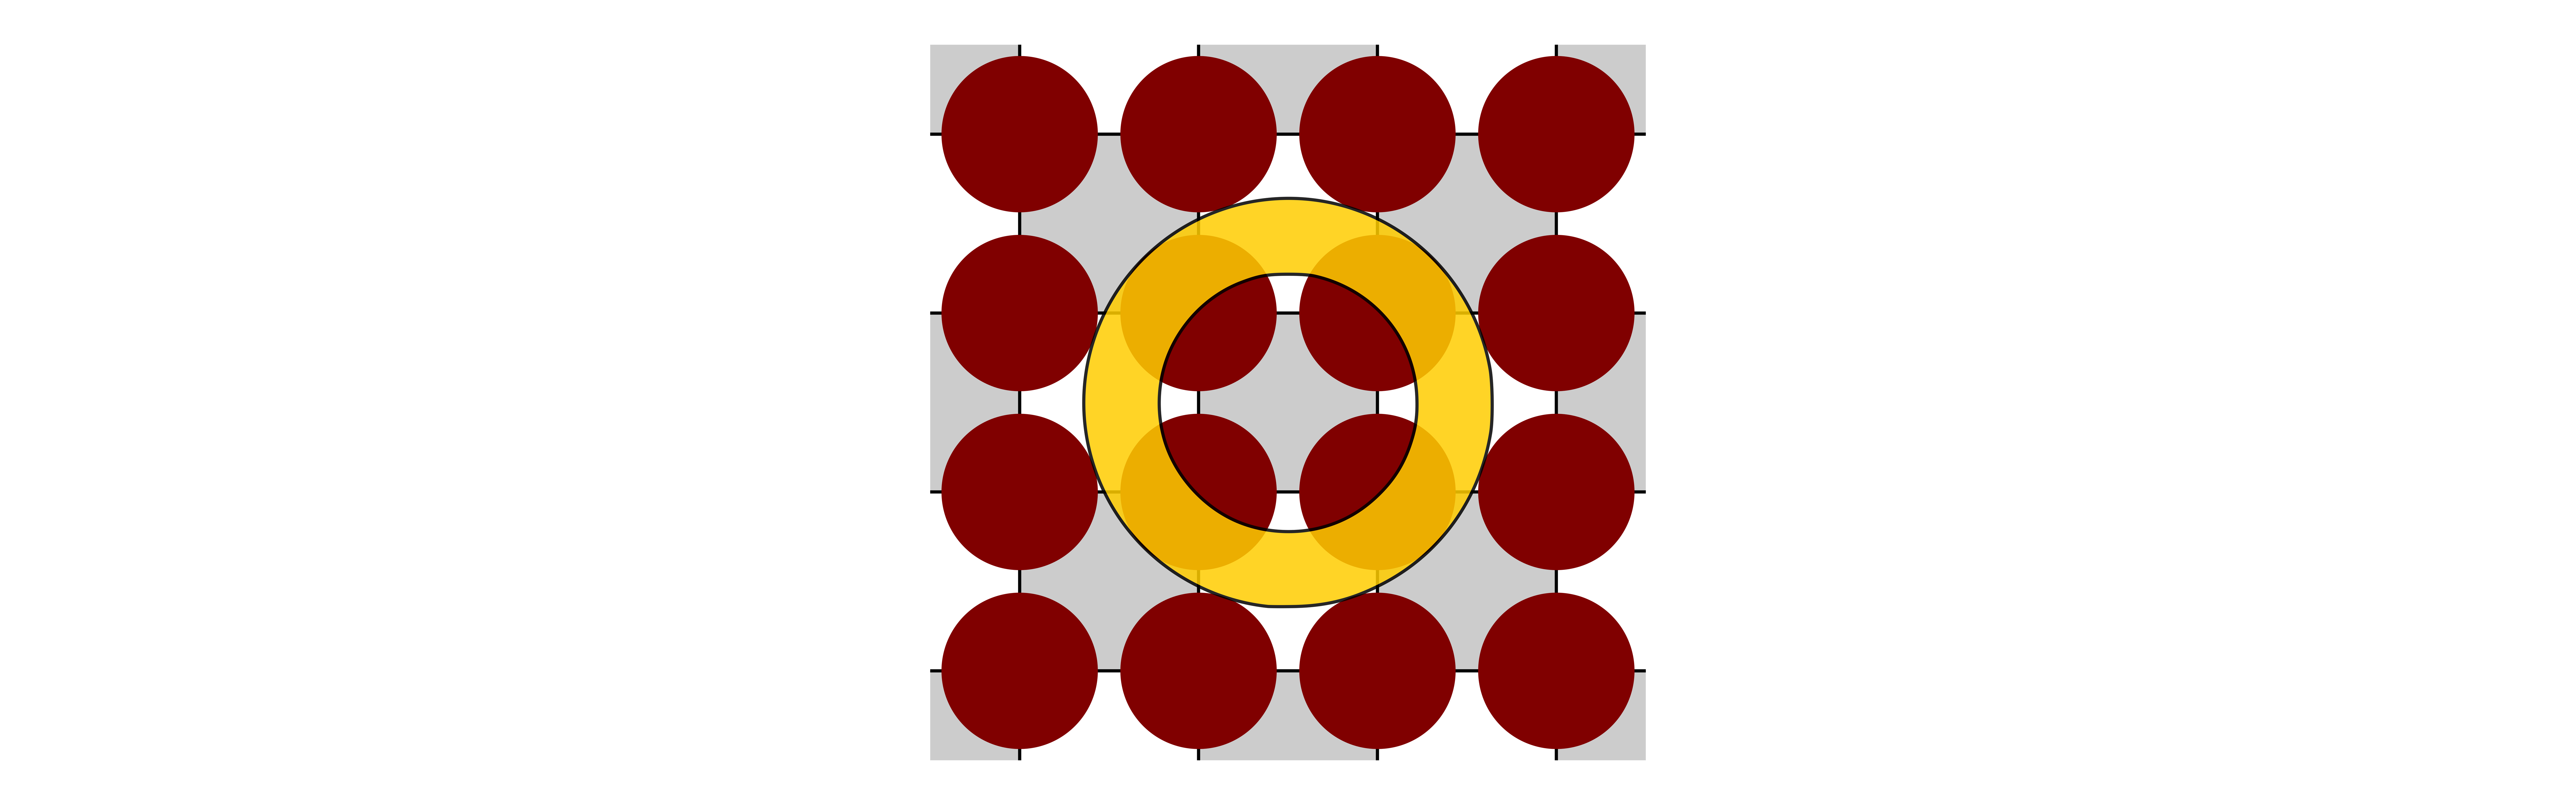 Kreise, die von einem Ring teilweise überdeckt werden